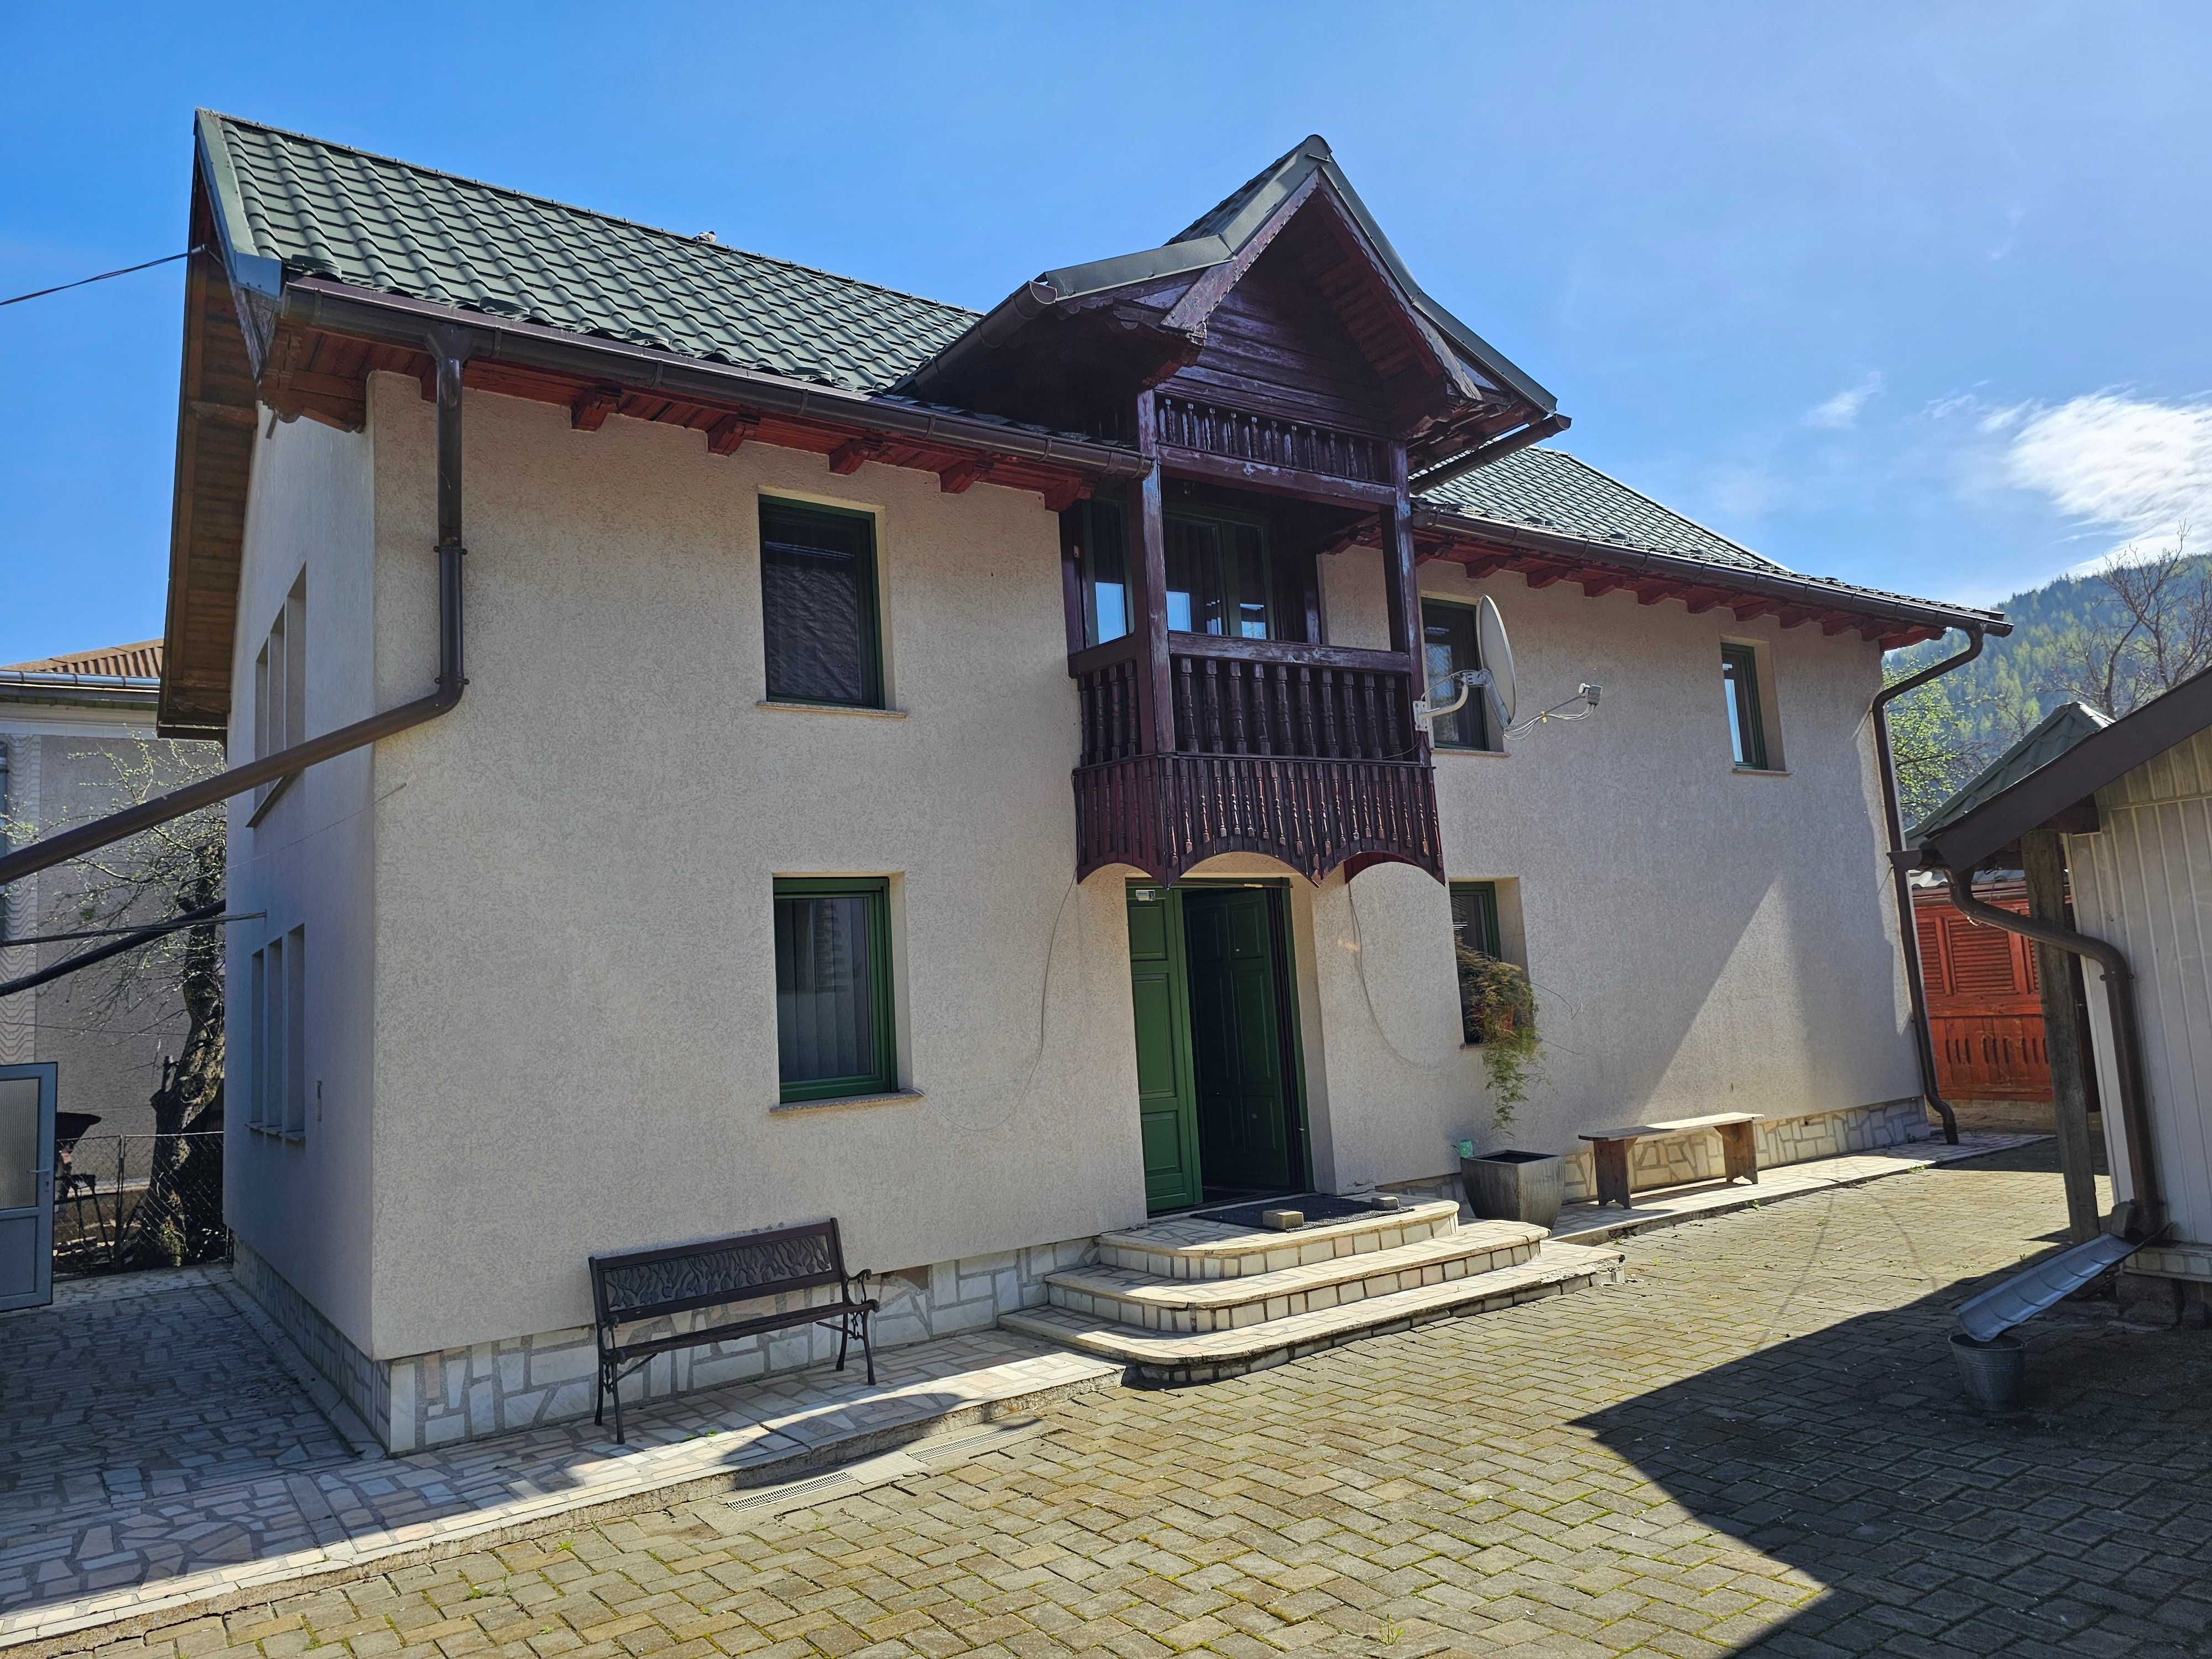 Casa de vanzare in Bucovina comuna Vama